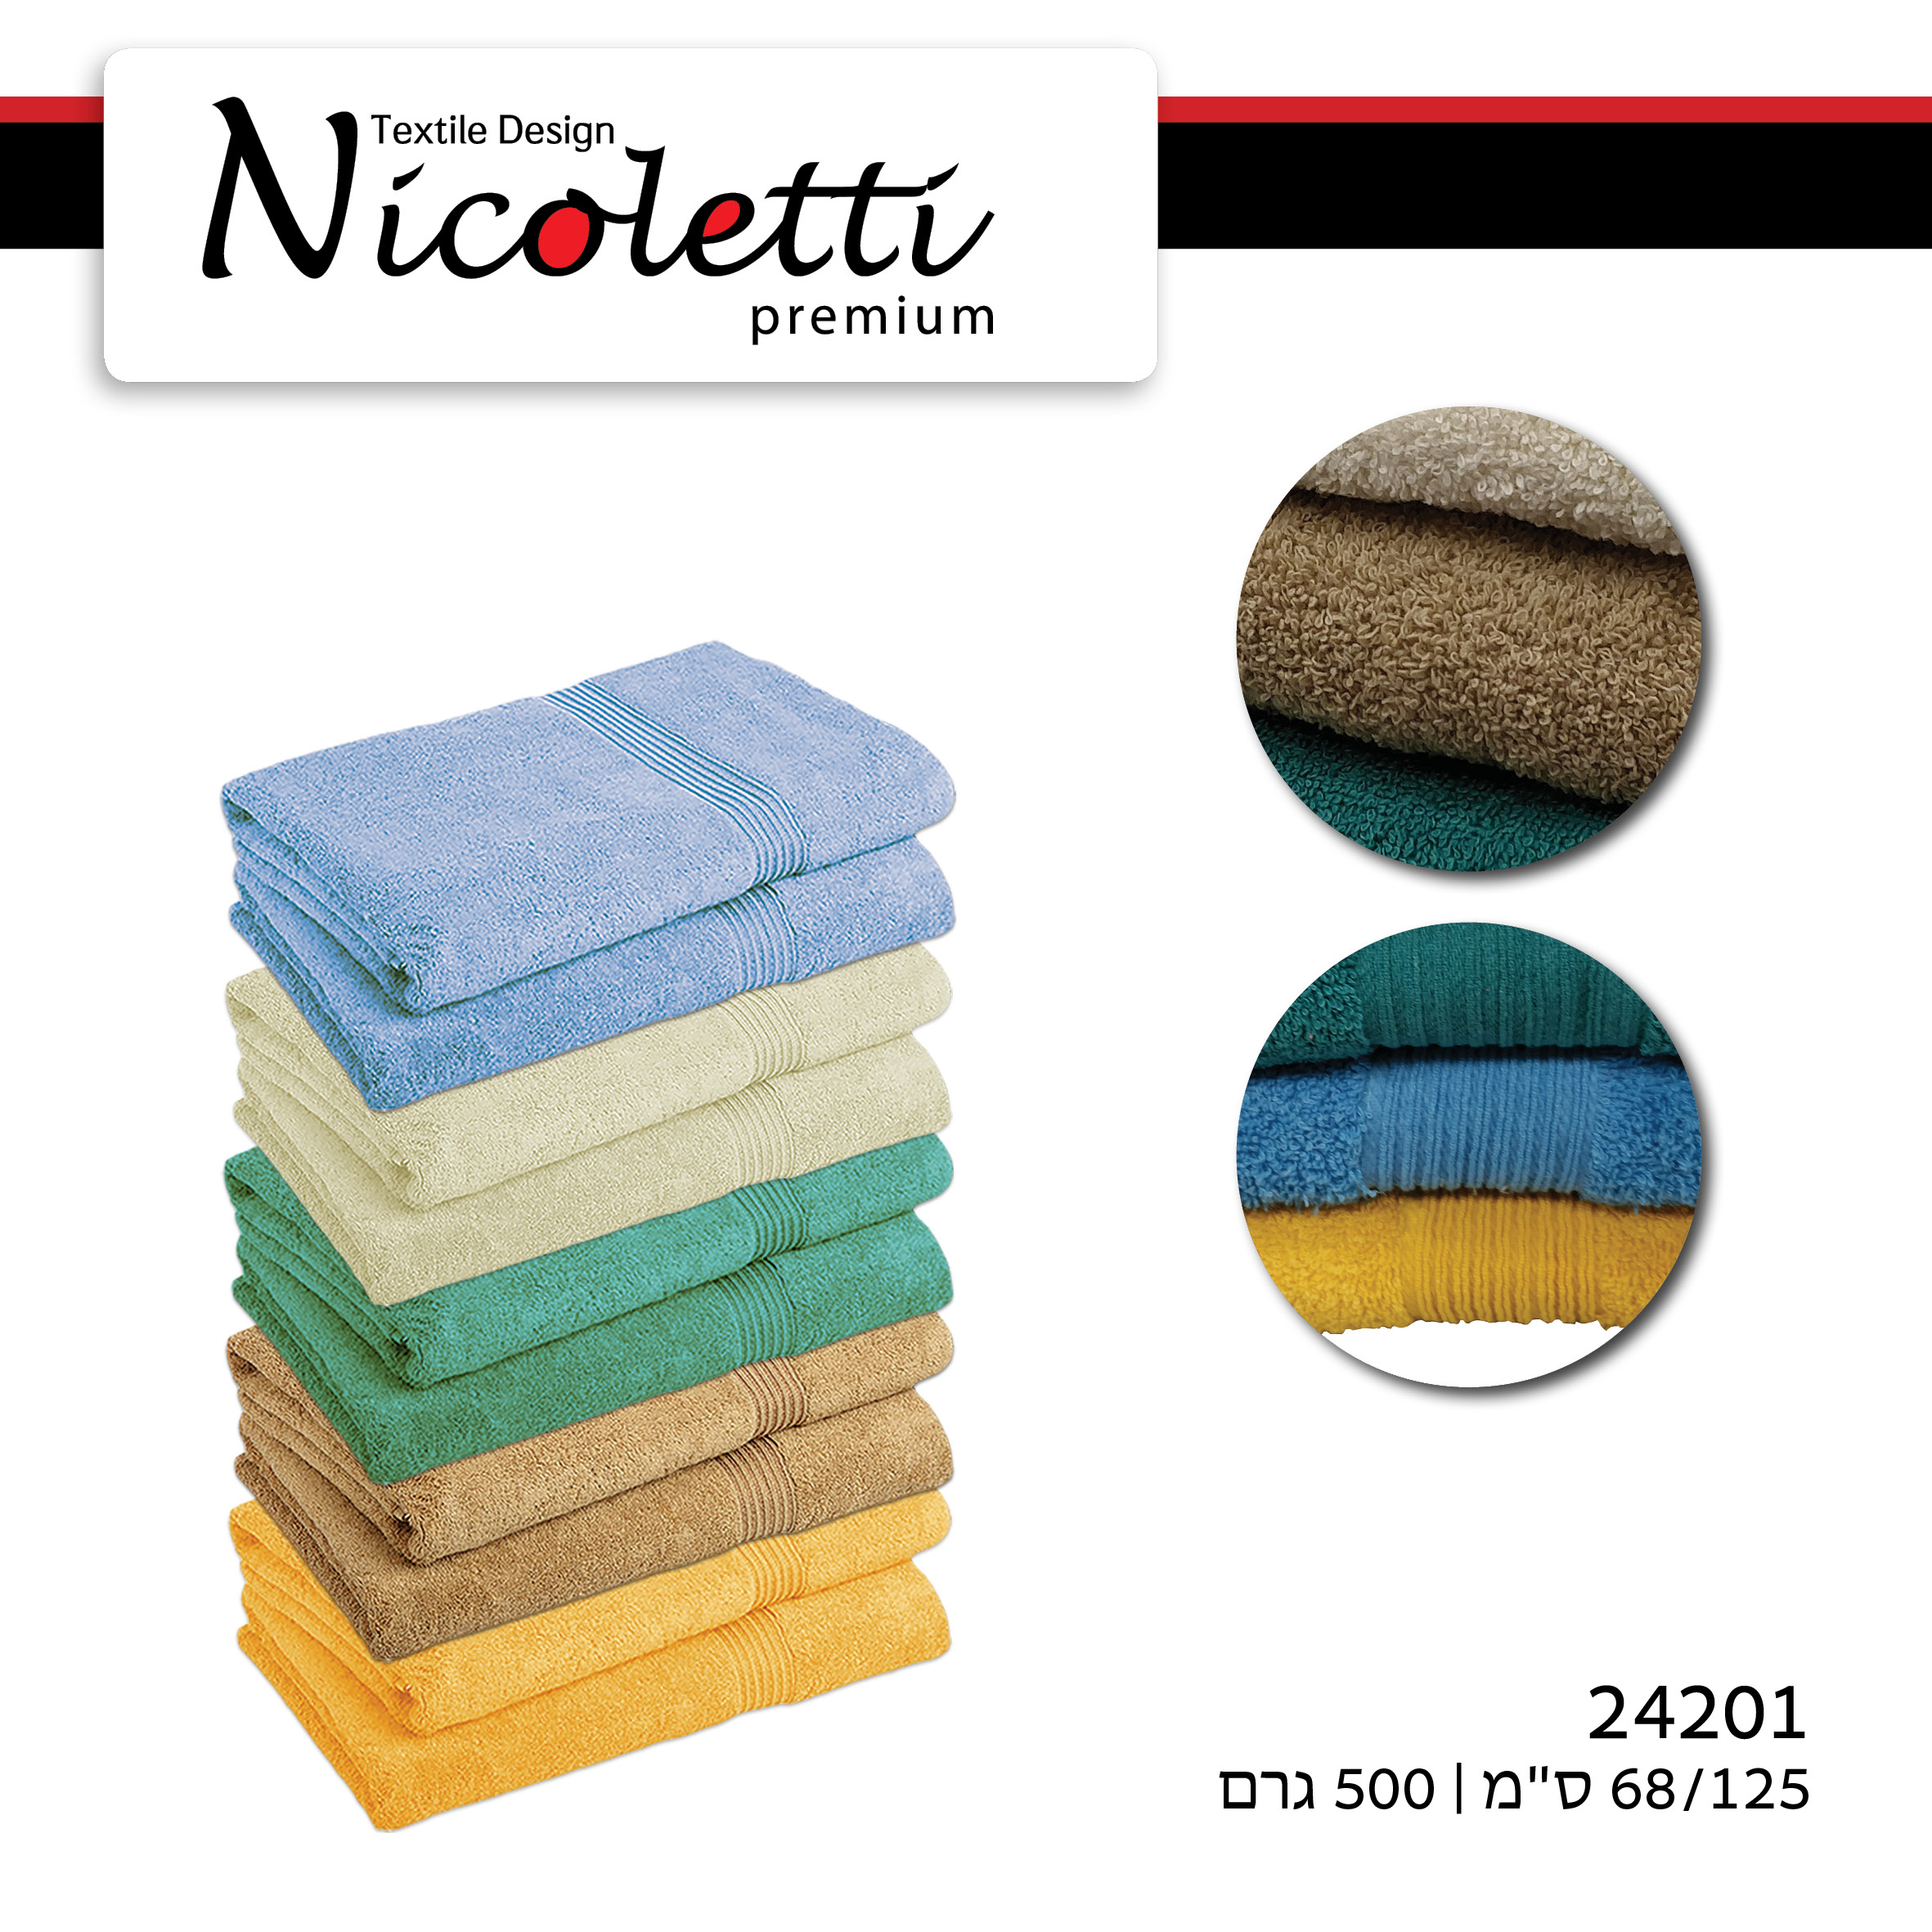 מגבת גוף ב עשויה מ-100% כותנה בעלות כושר ספיגה מעולה מגוון צבעים נעימים מבית Nicoletti